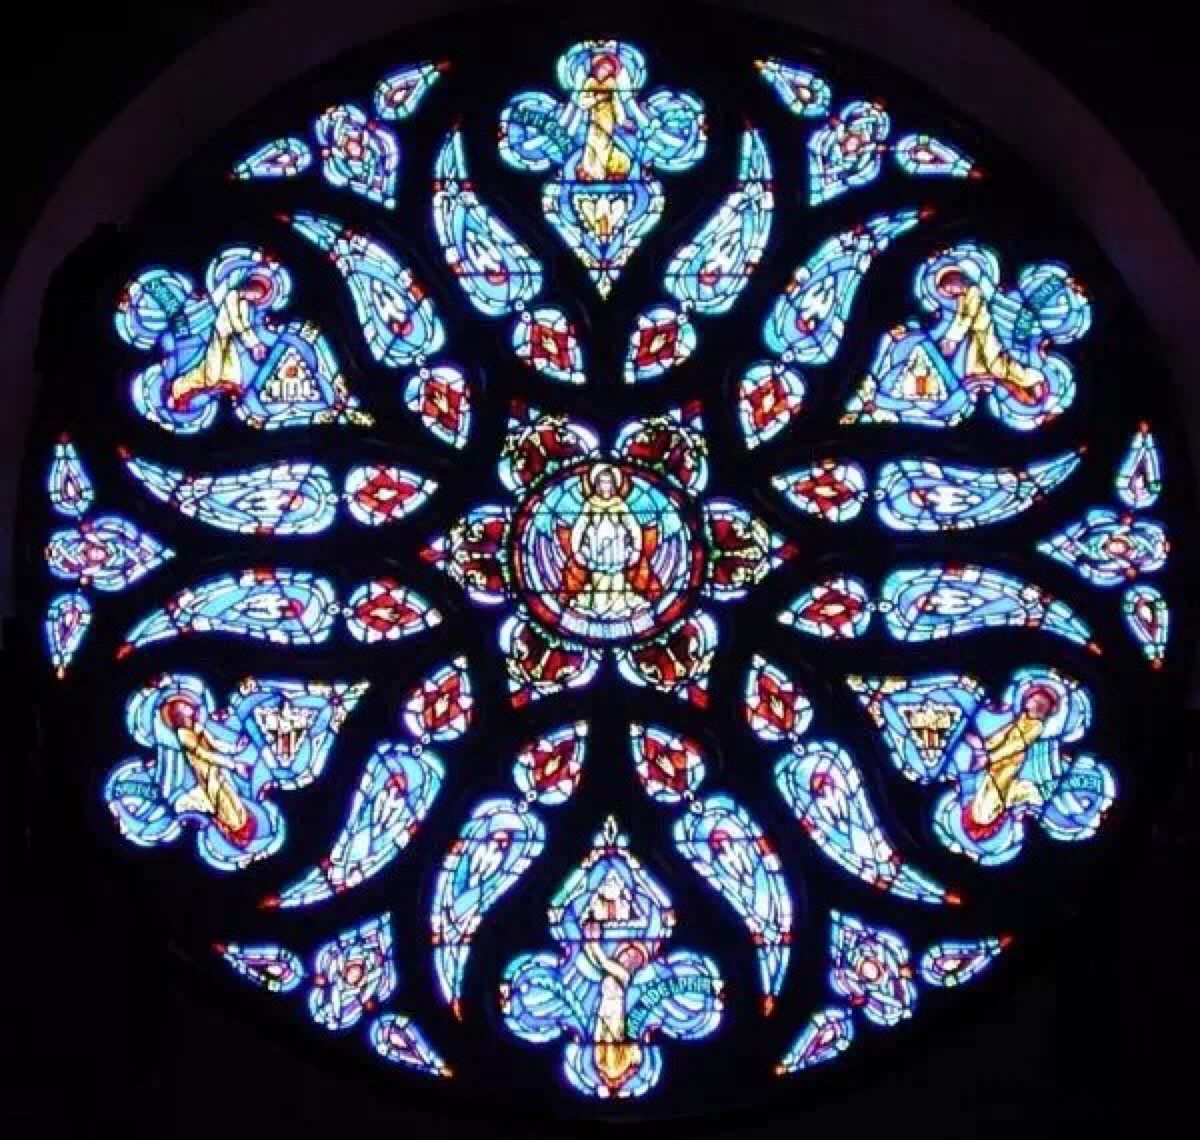 玫瑰窗(therose window)也称玫瑰花窗,为哥特式建筑的特色之一,指